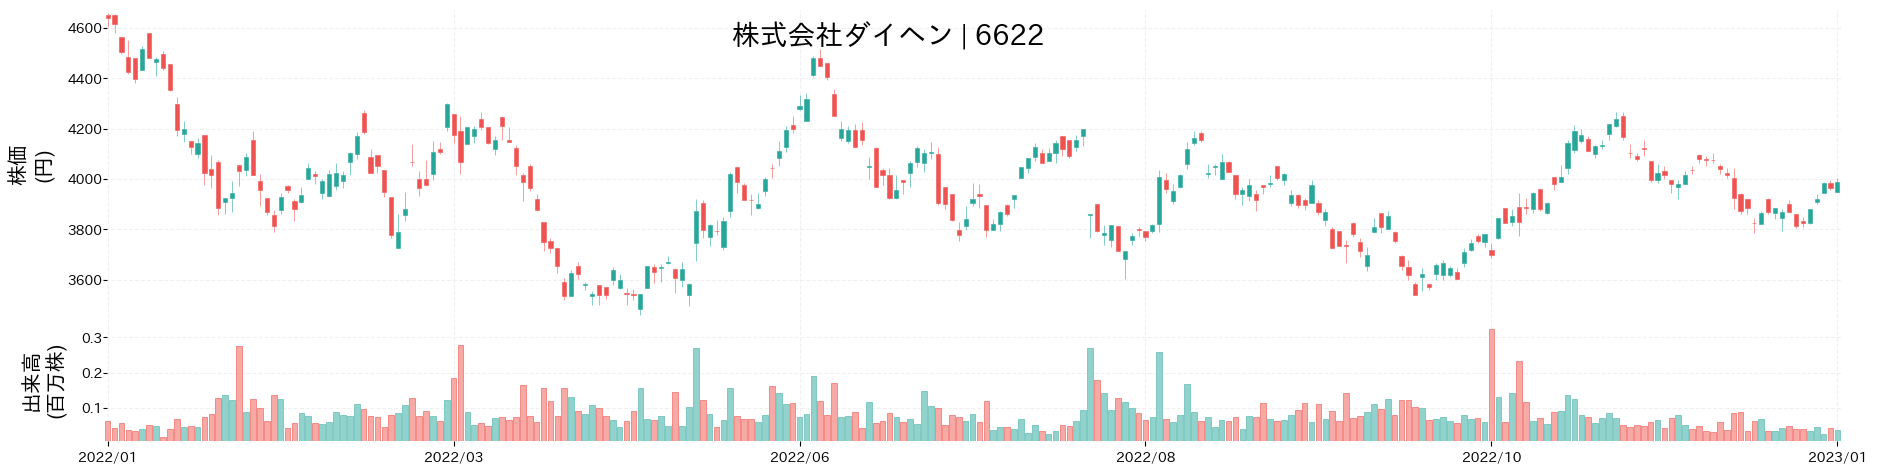 ダイヘンの株価推移(2022)